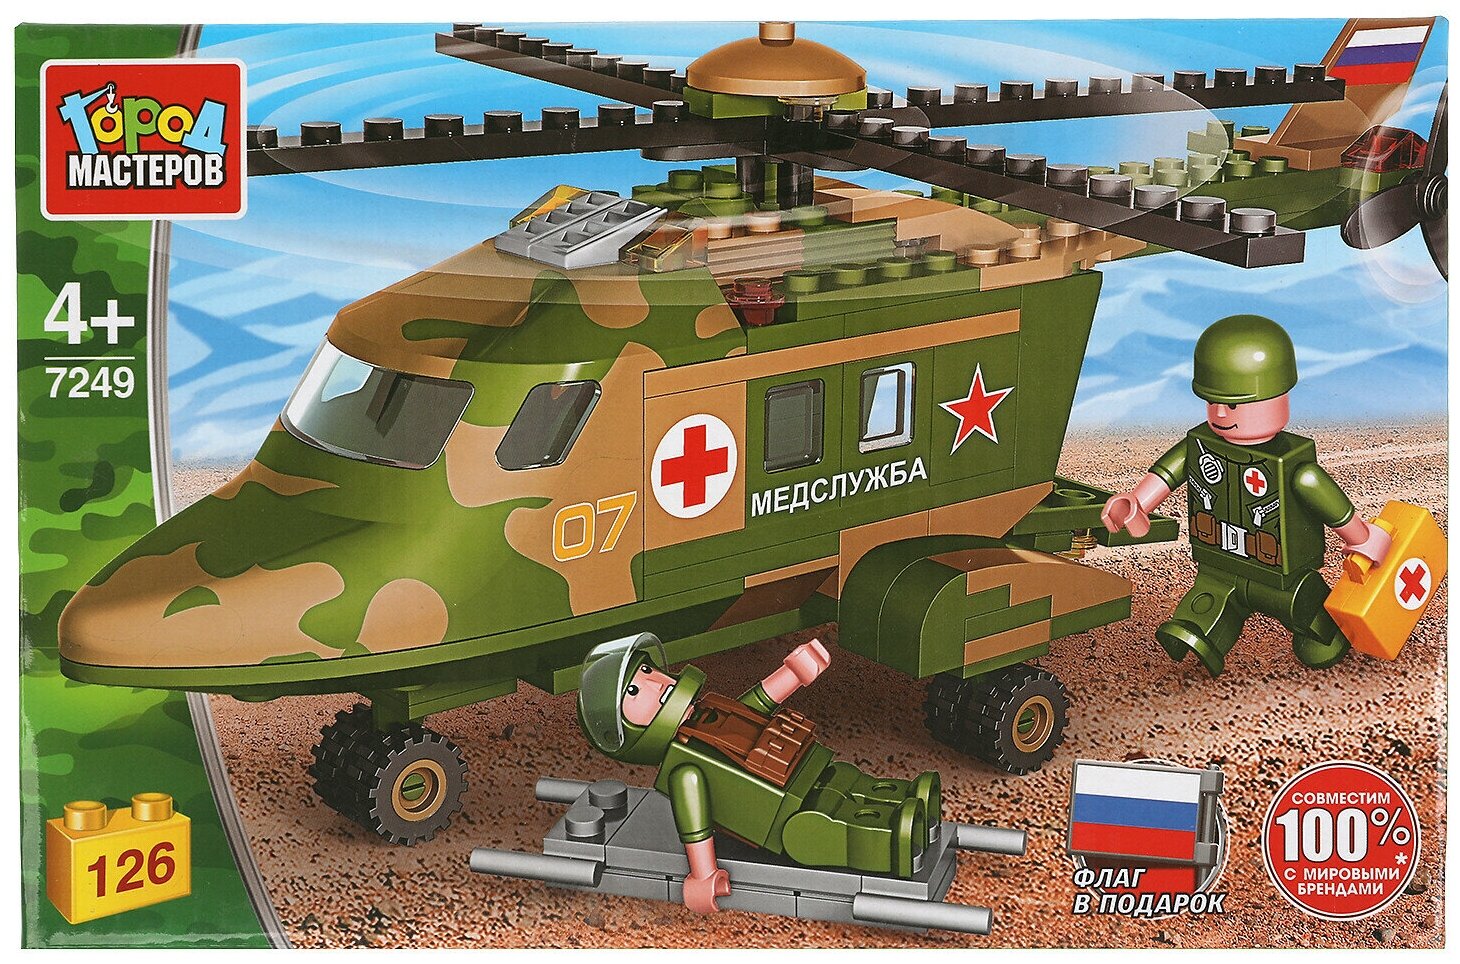 Конструктор вертолет медицинской службы серия армия 126 деталей город мастеров 7249-UU